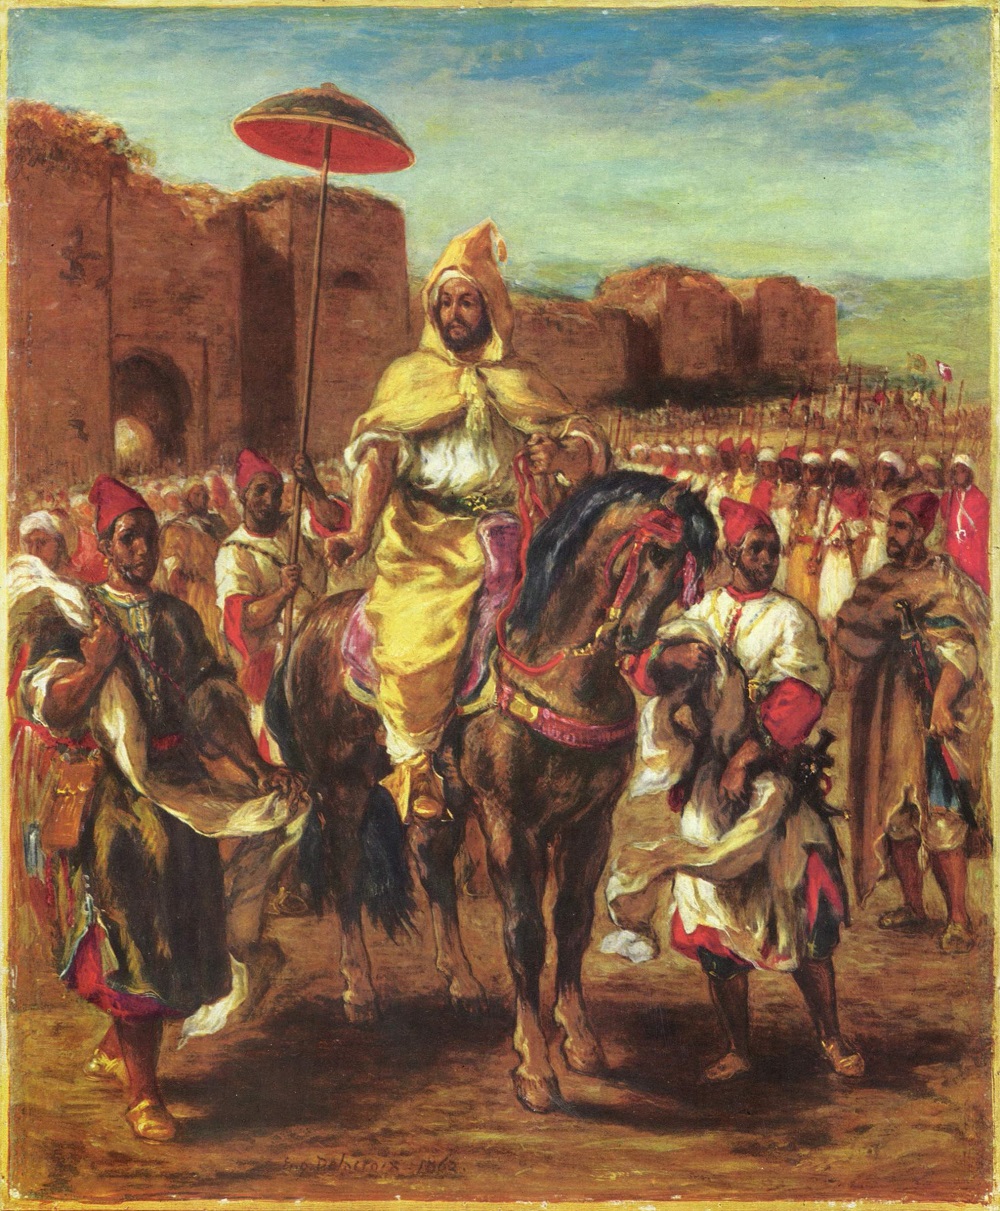 Le Sultan du Maroc, Eugène Delacroix (1845)